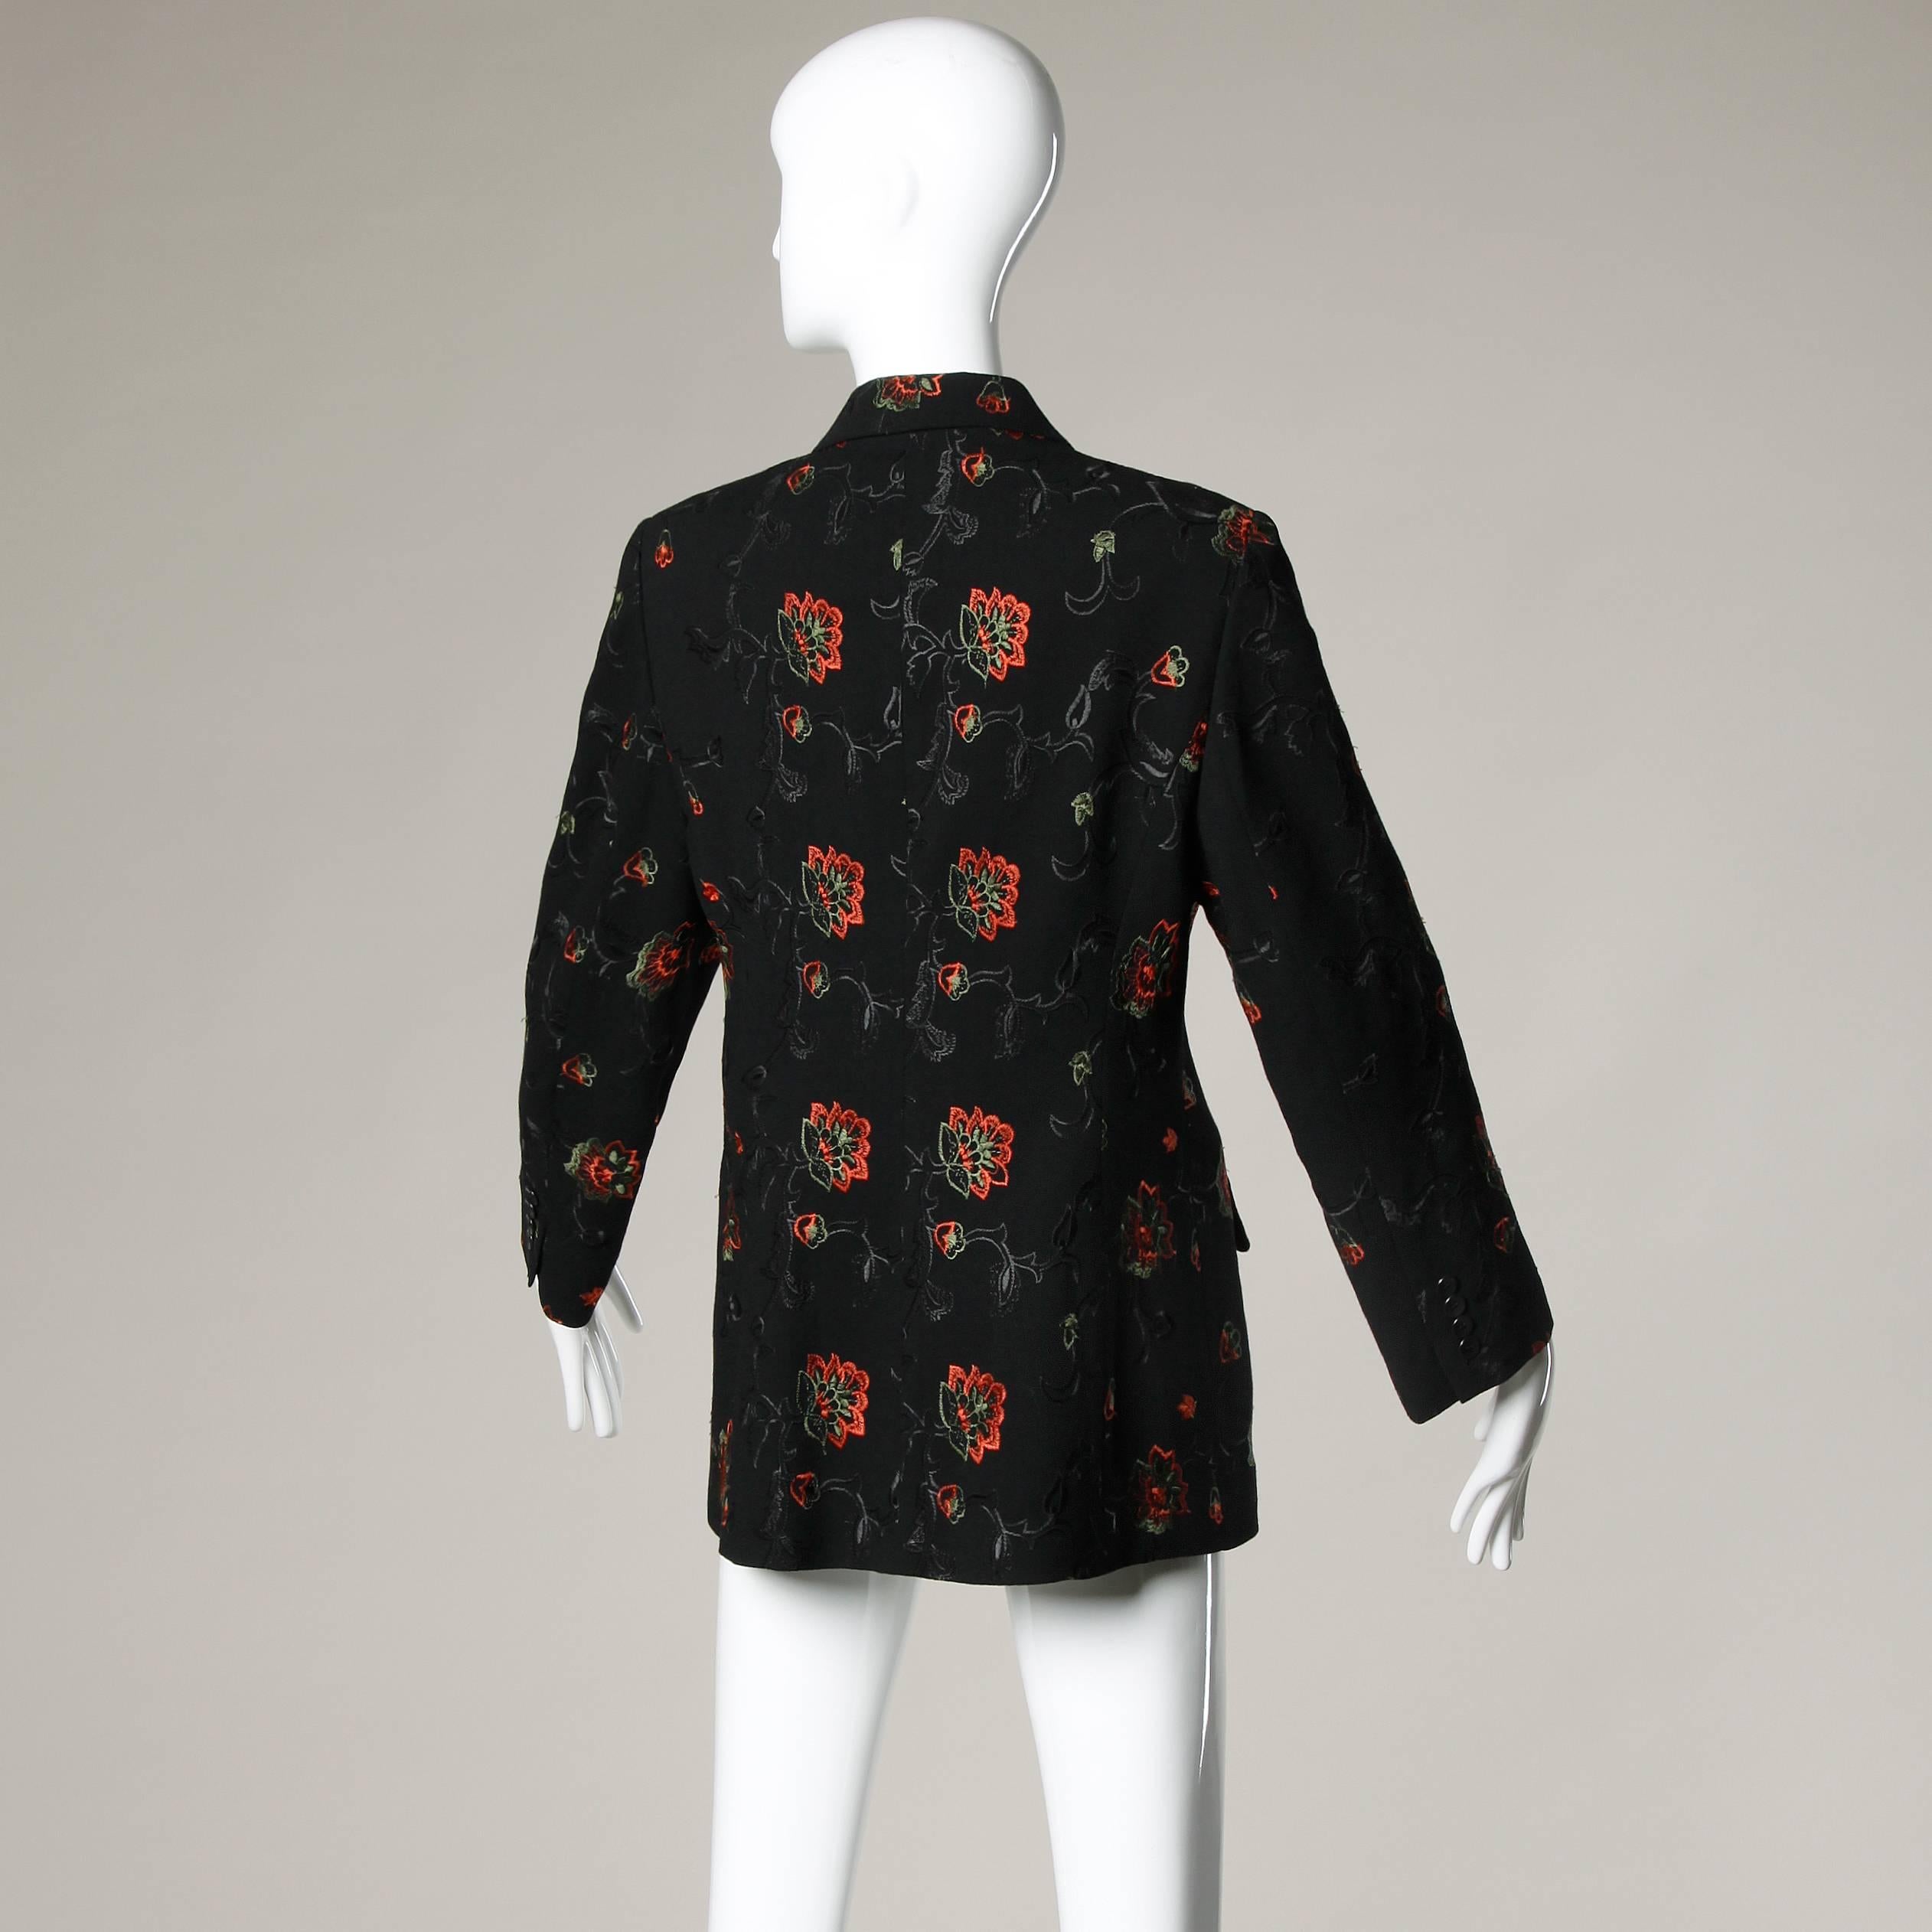 Black Oscar de la Renta Wool Blazer Jacket with Floral Embroidery